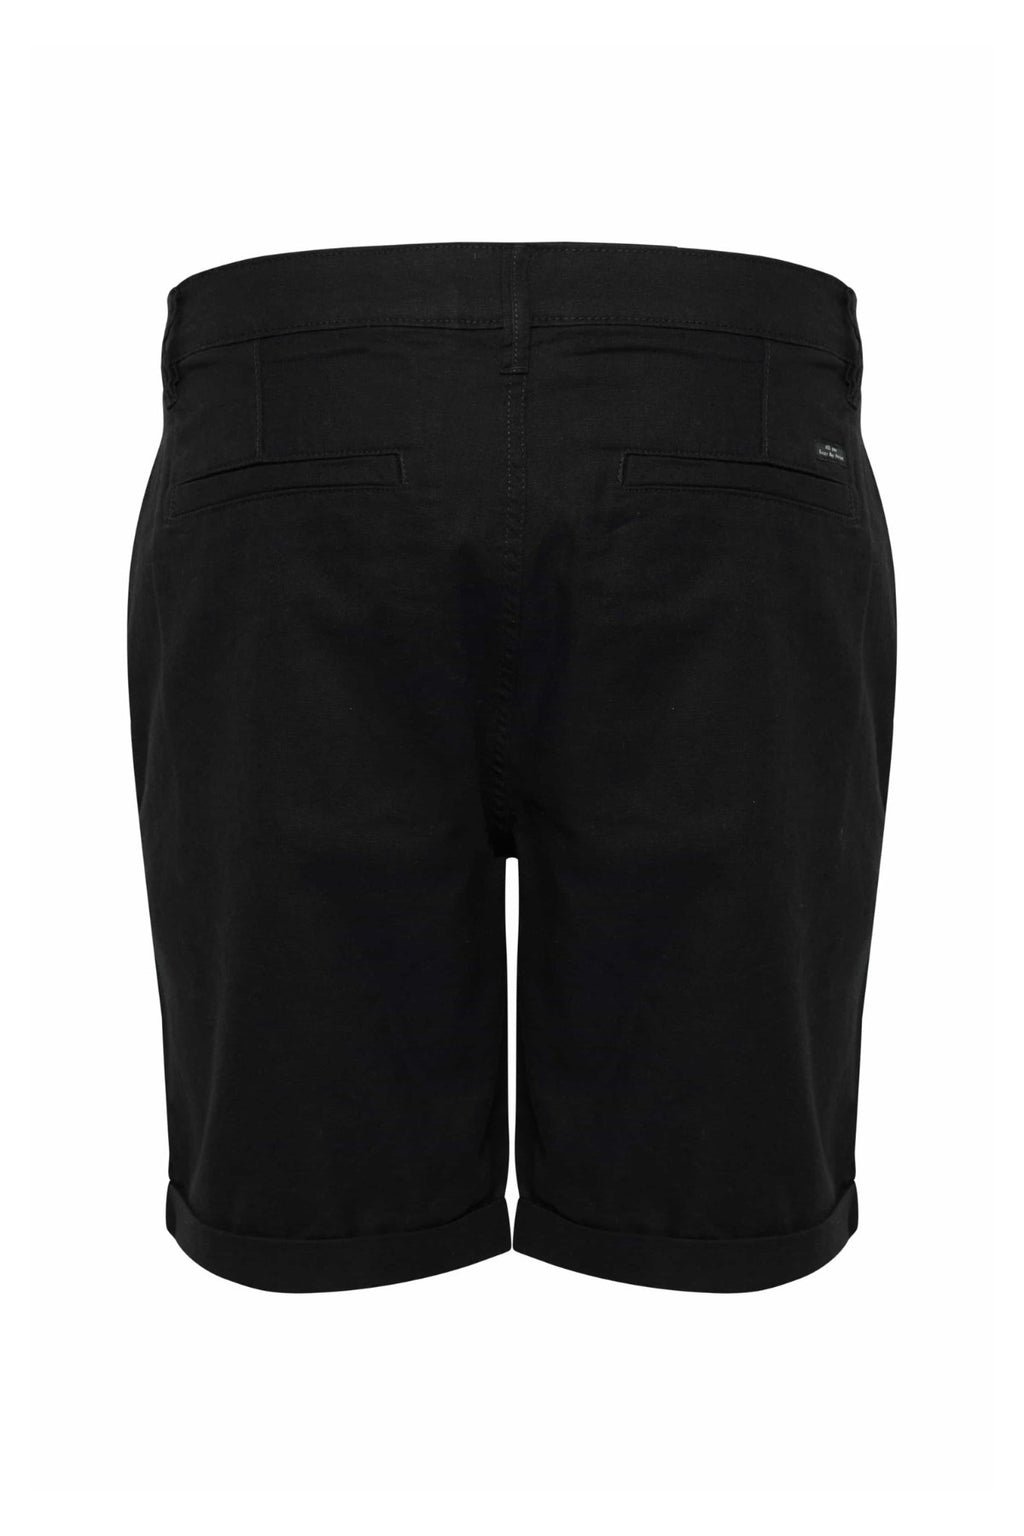 Lino Shorts - Negro